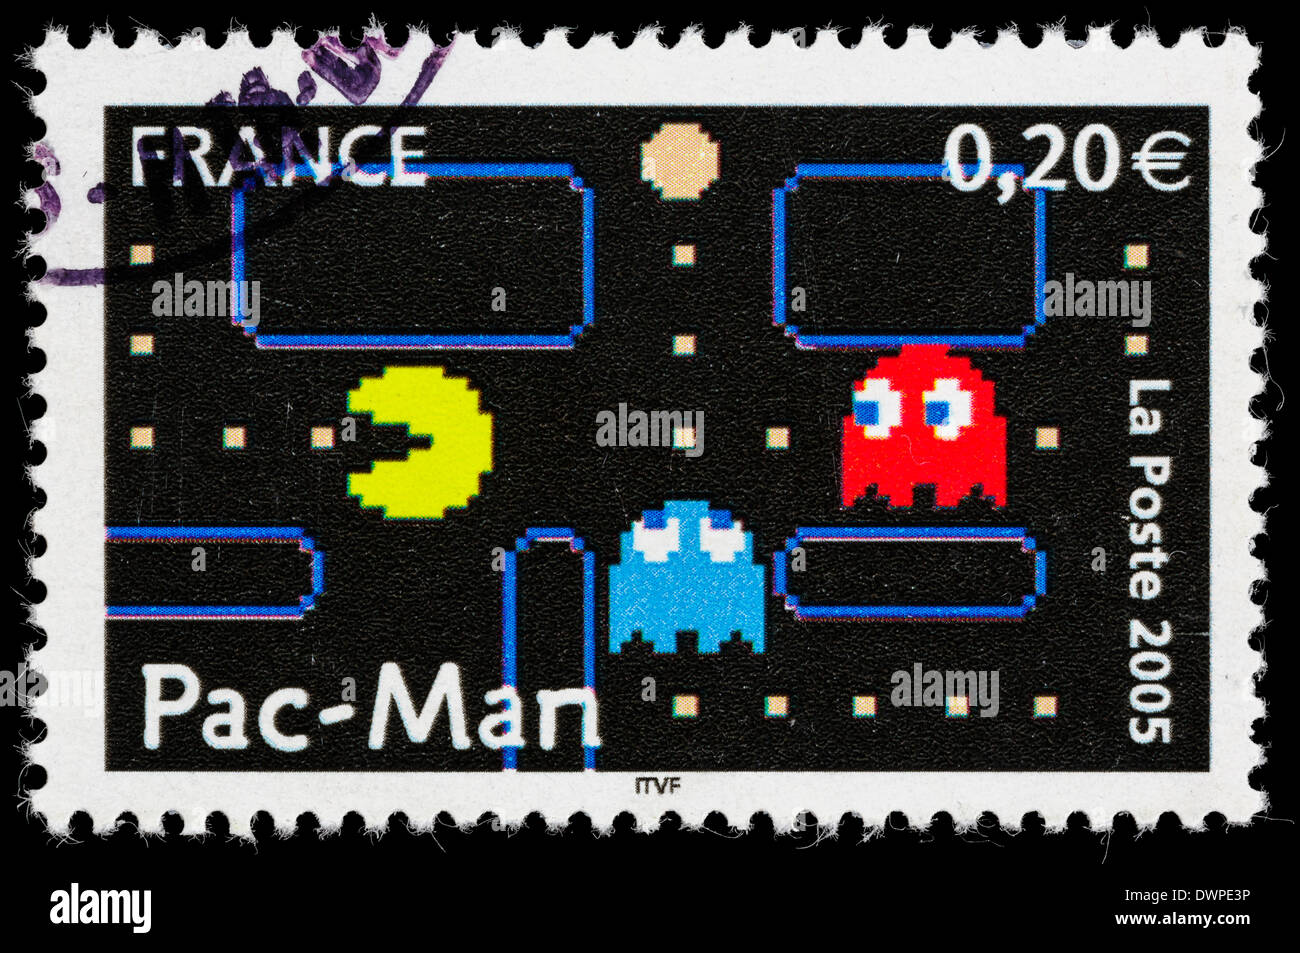 France 2005 Timbre-poste avec une illustration à partir des années 1980, jeu vidéo d'arcade Pac-Man. Banque D'Images